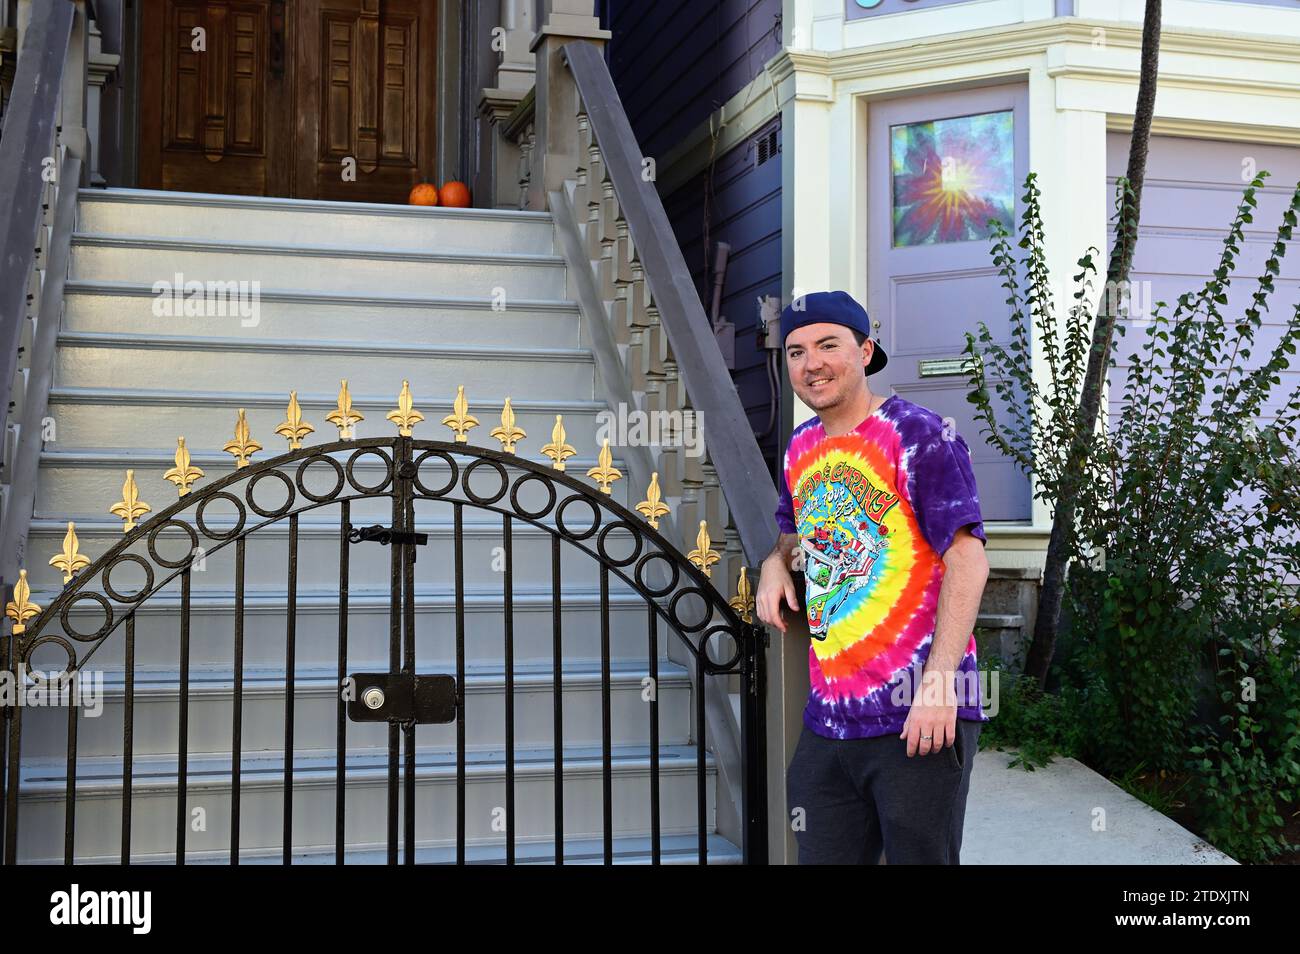 San Francisco, Kalifornien, USA. Mann, angemessen gekleidet, besucht das "Grateful Dead House" in der Ashbury Street 710. Stockfoto